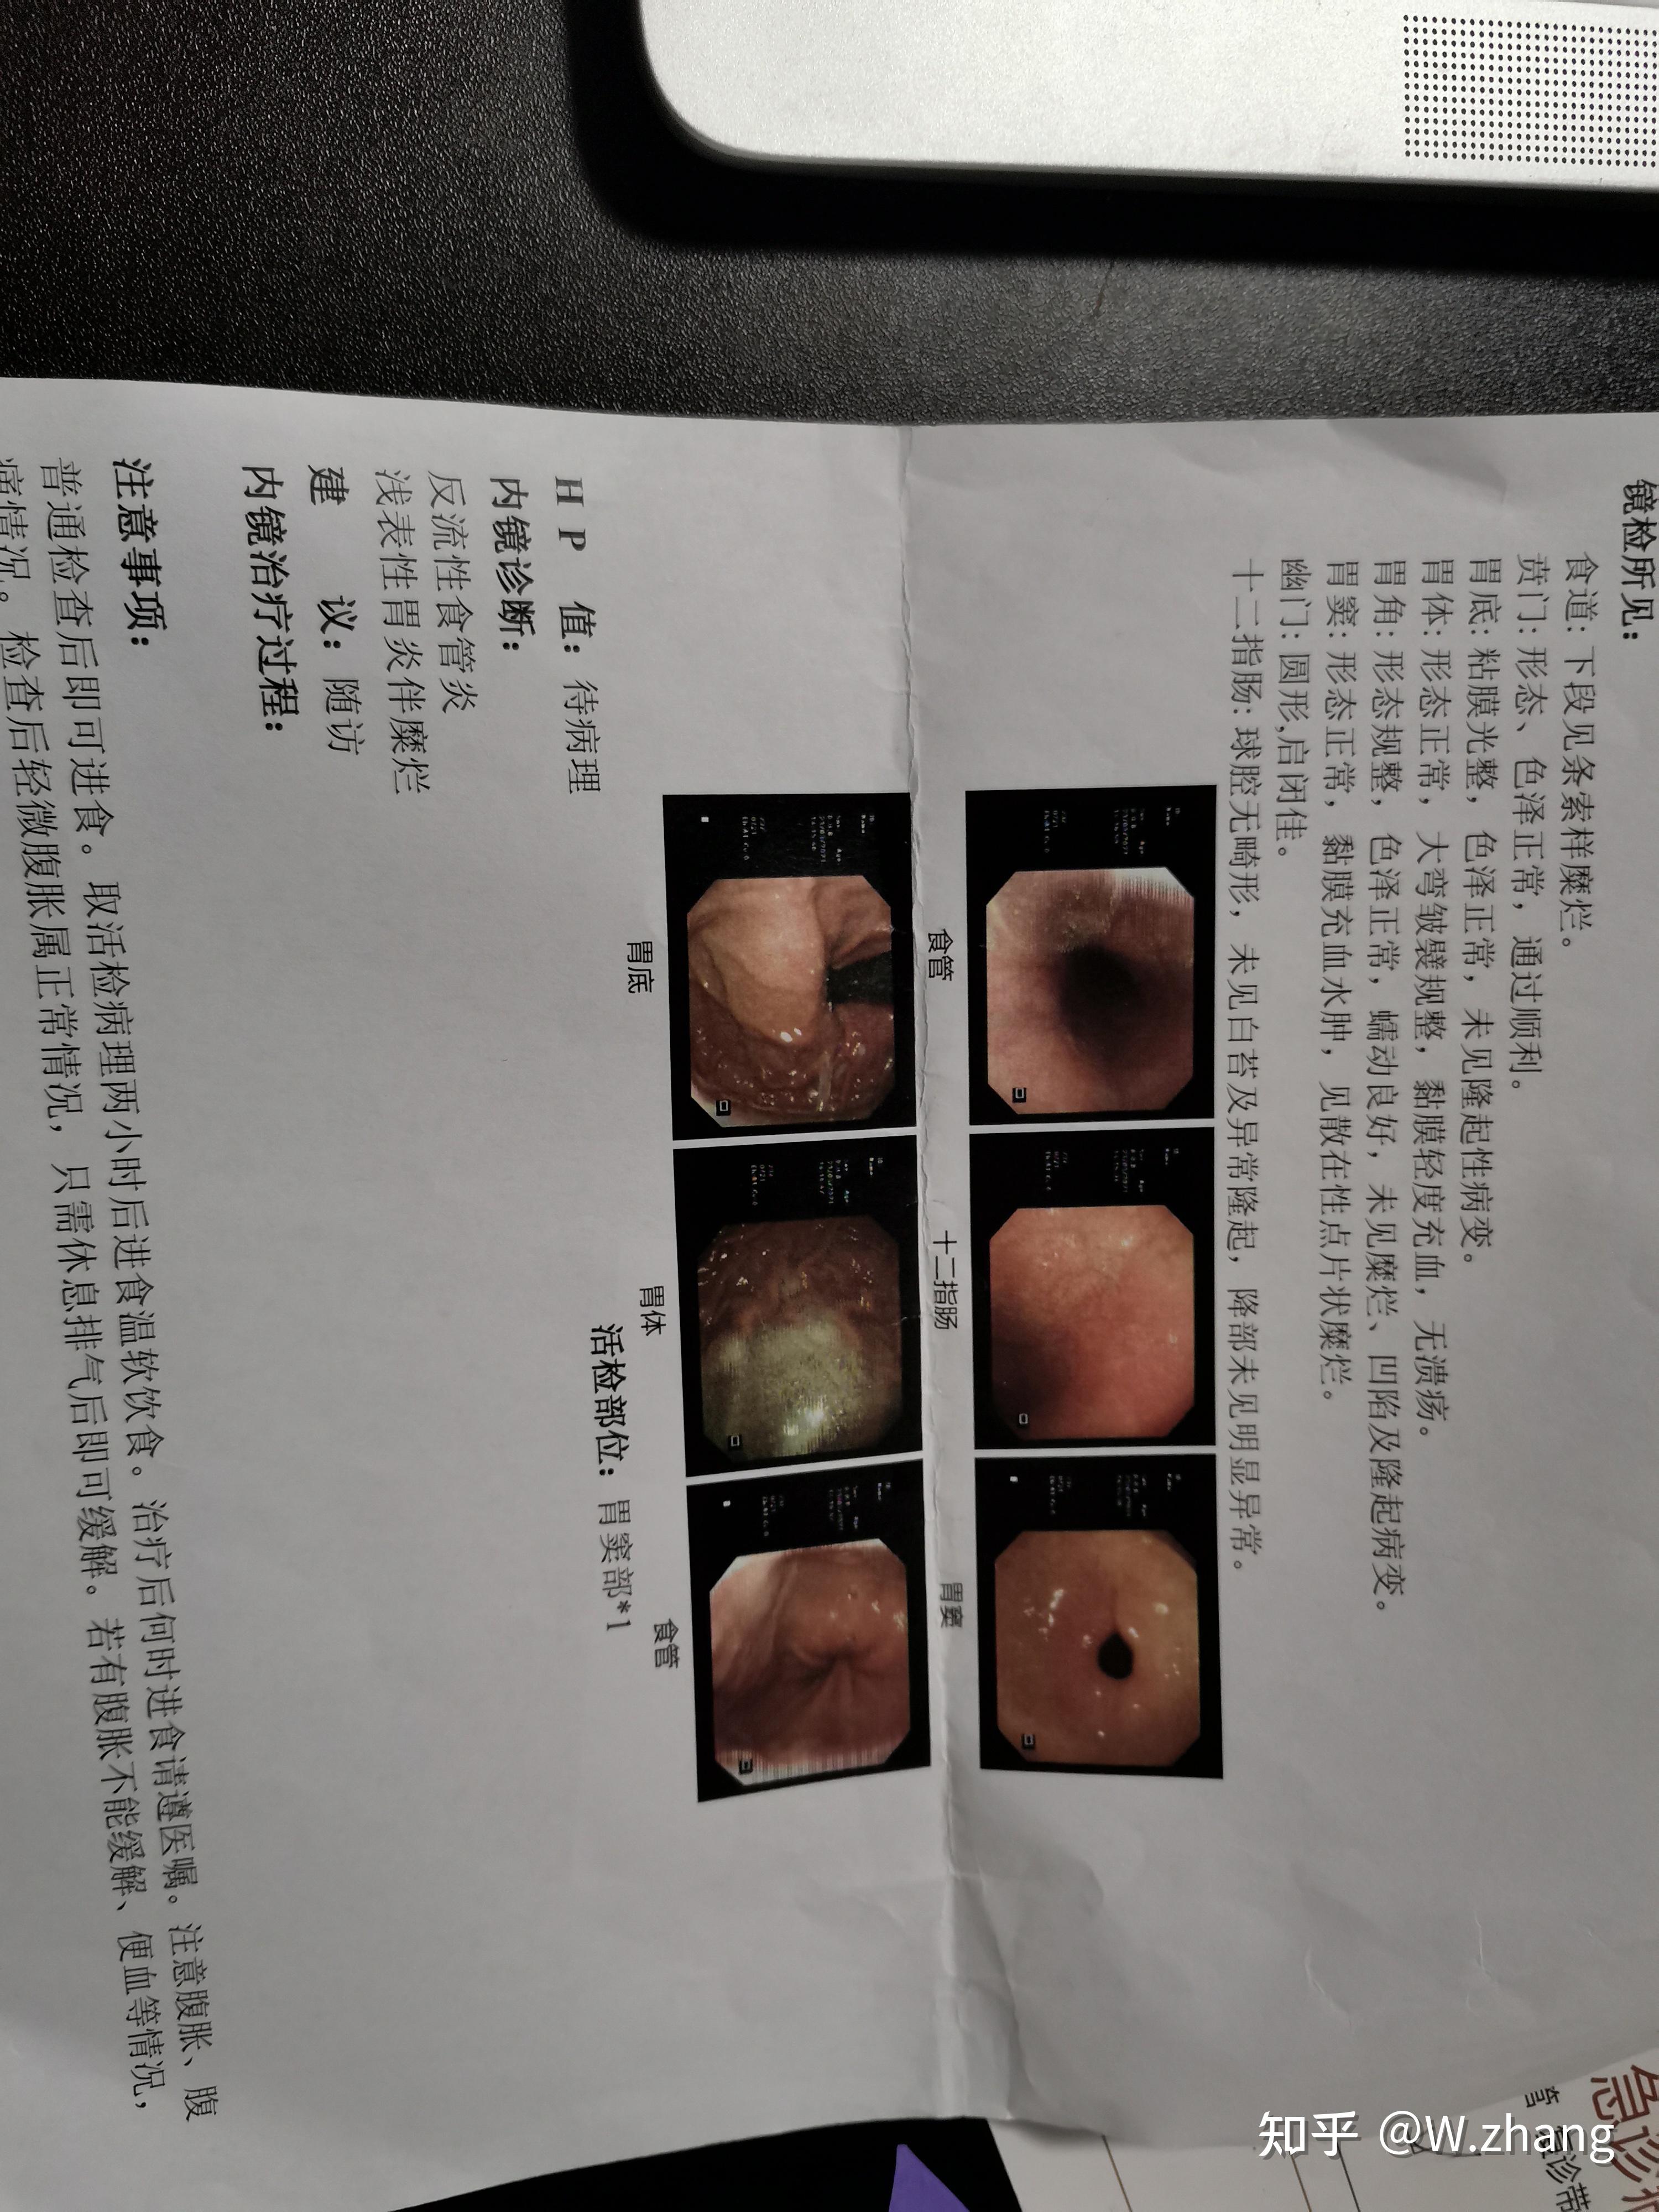 上海市周浦医院胃镜检查